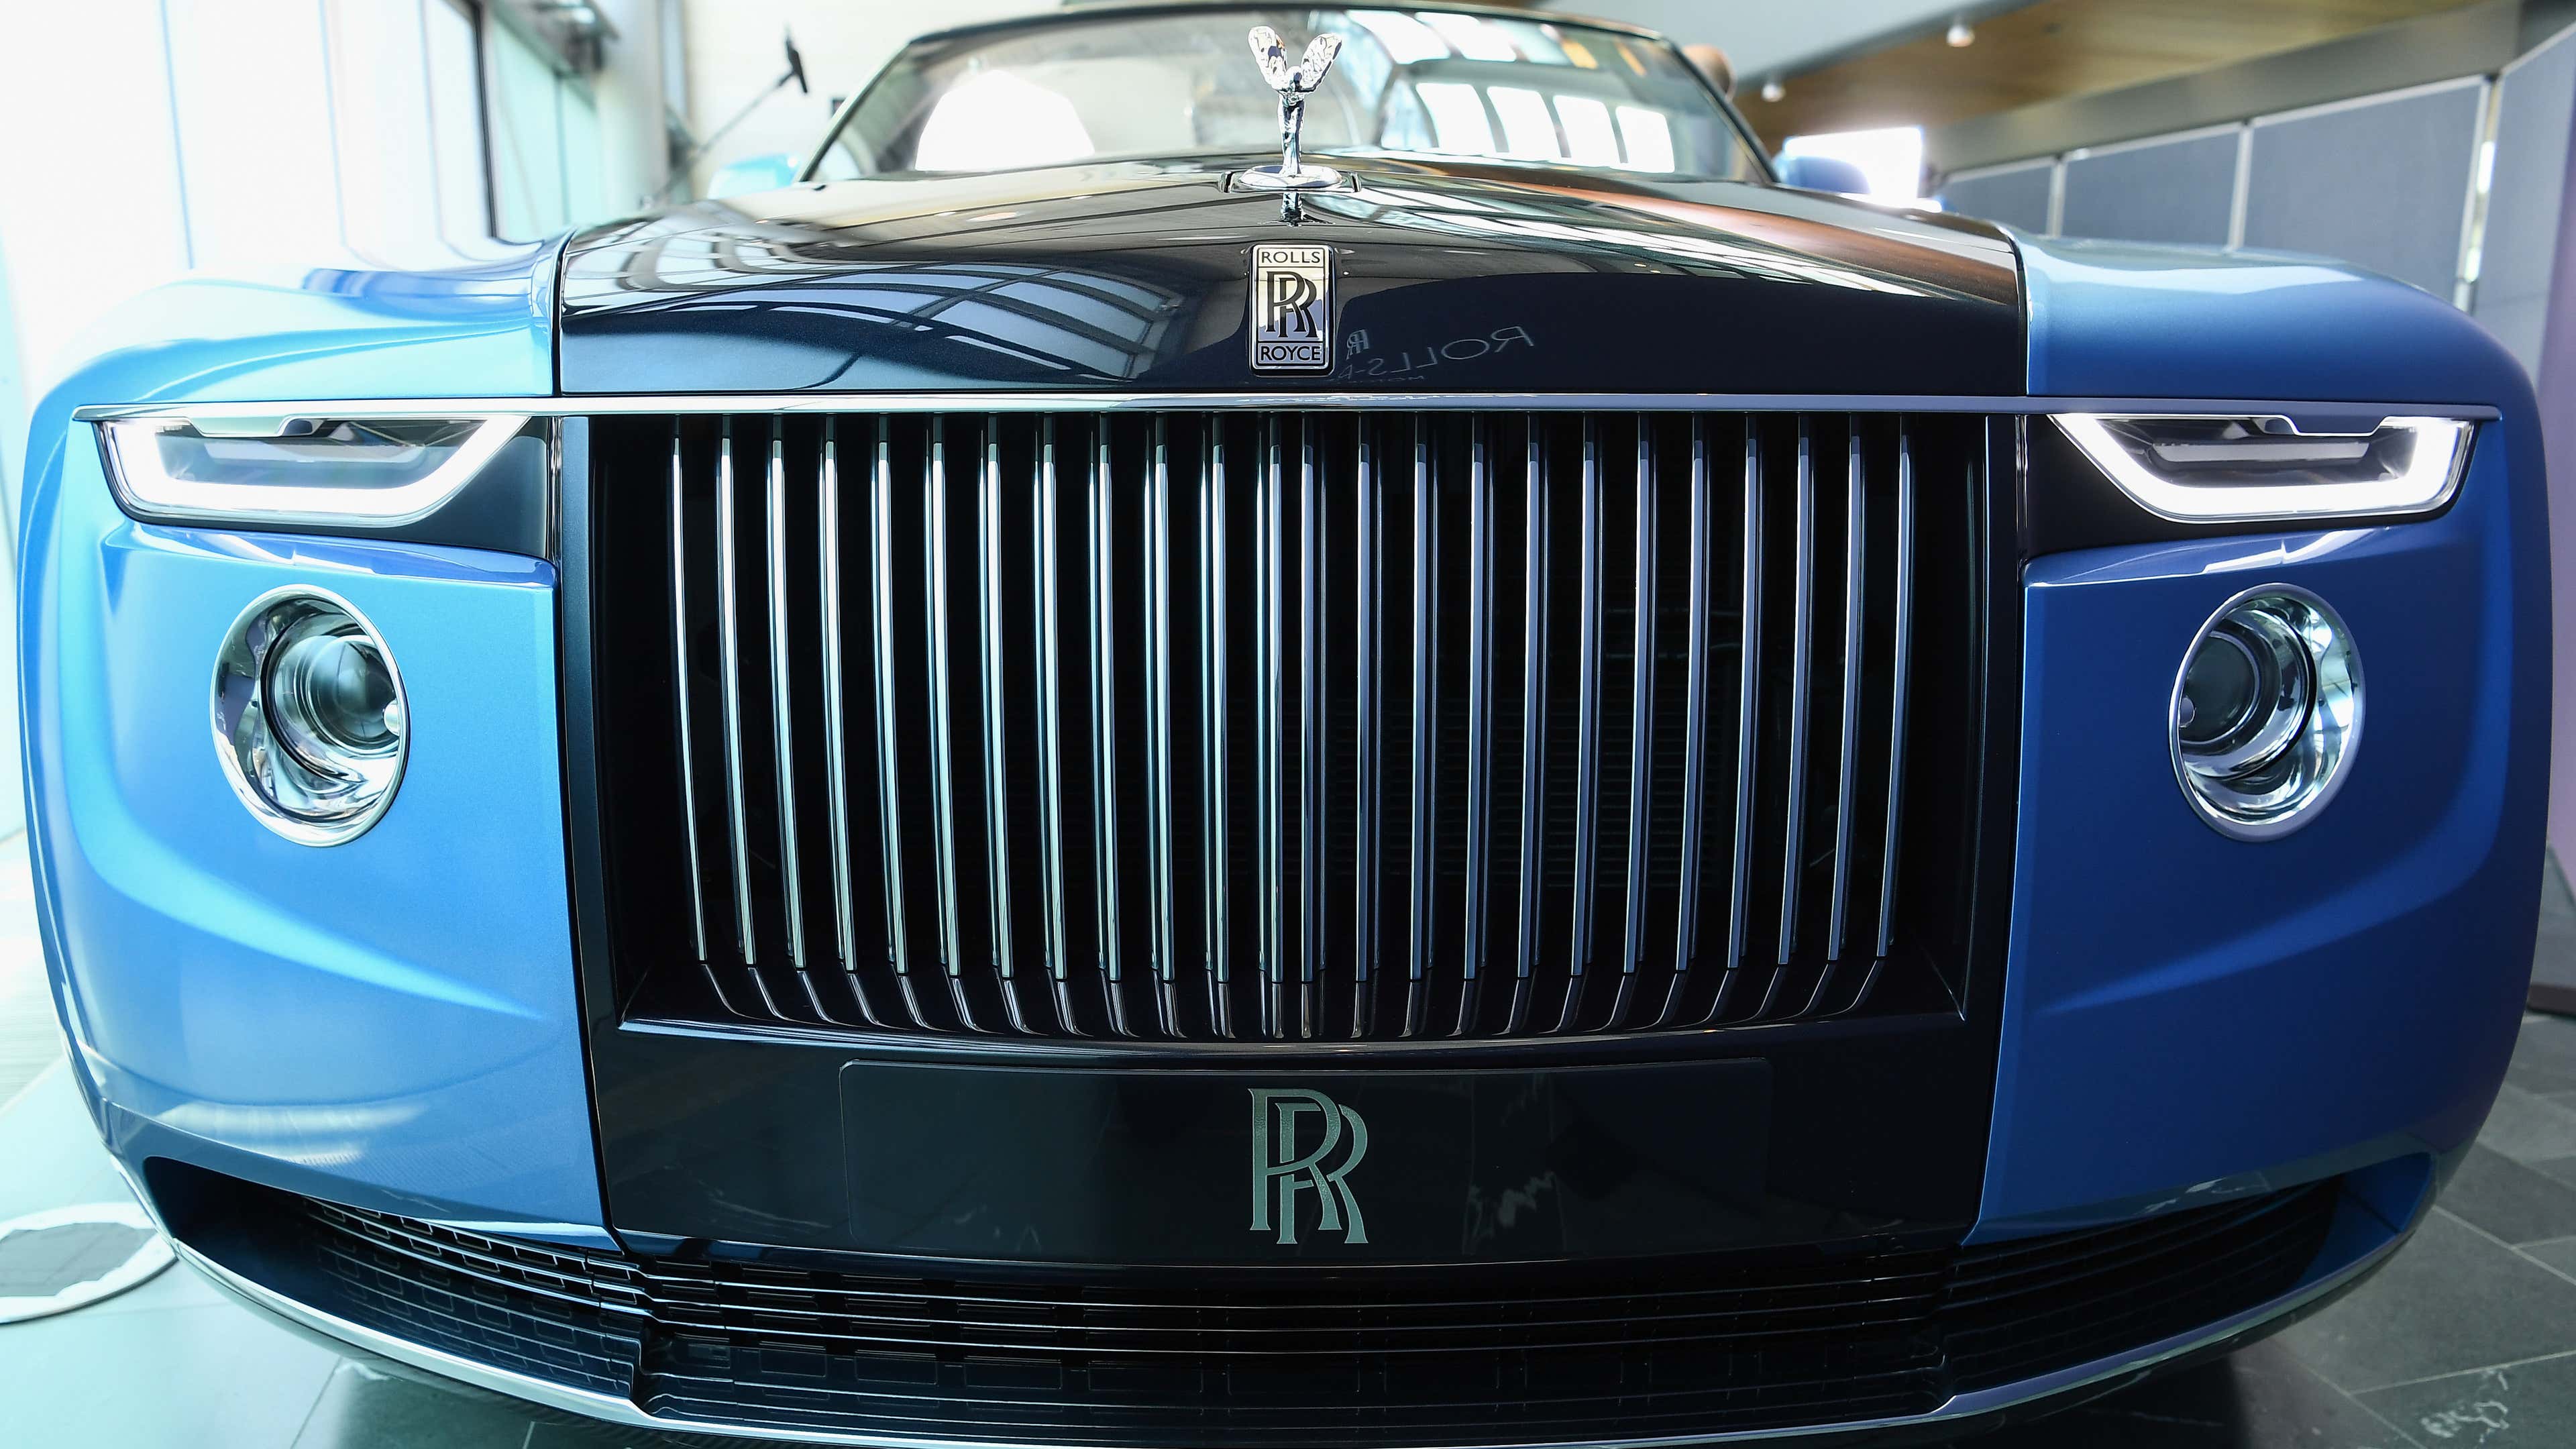 Boat Tail Rolls Royce